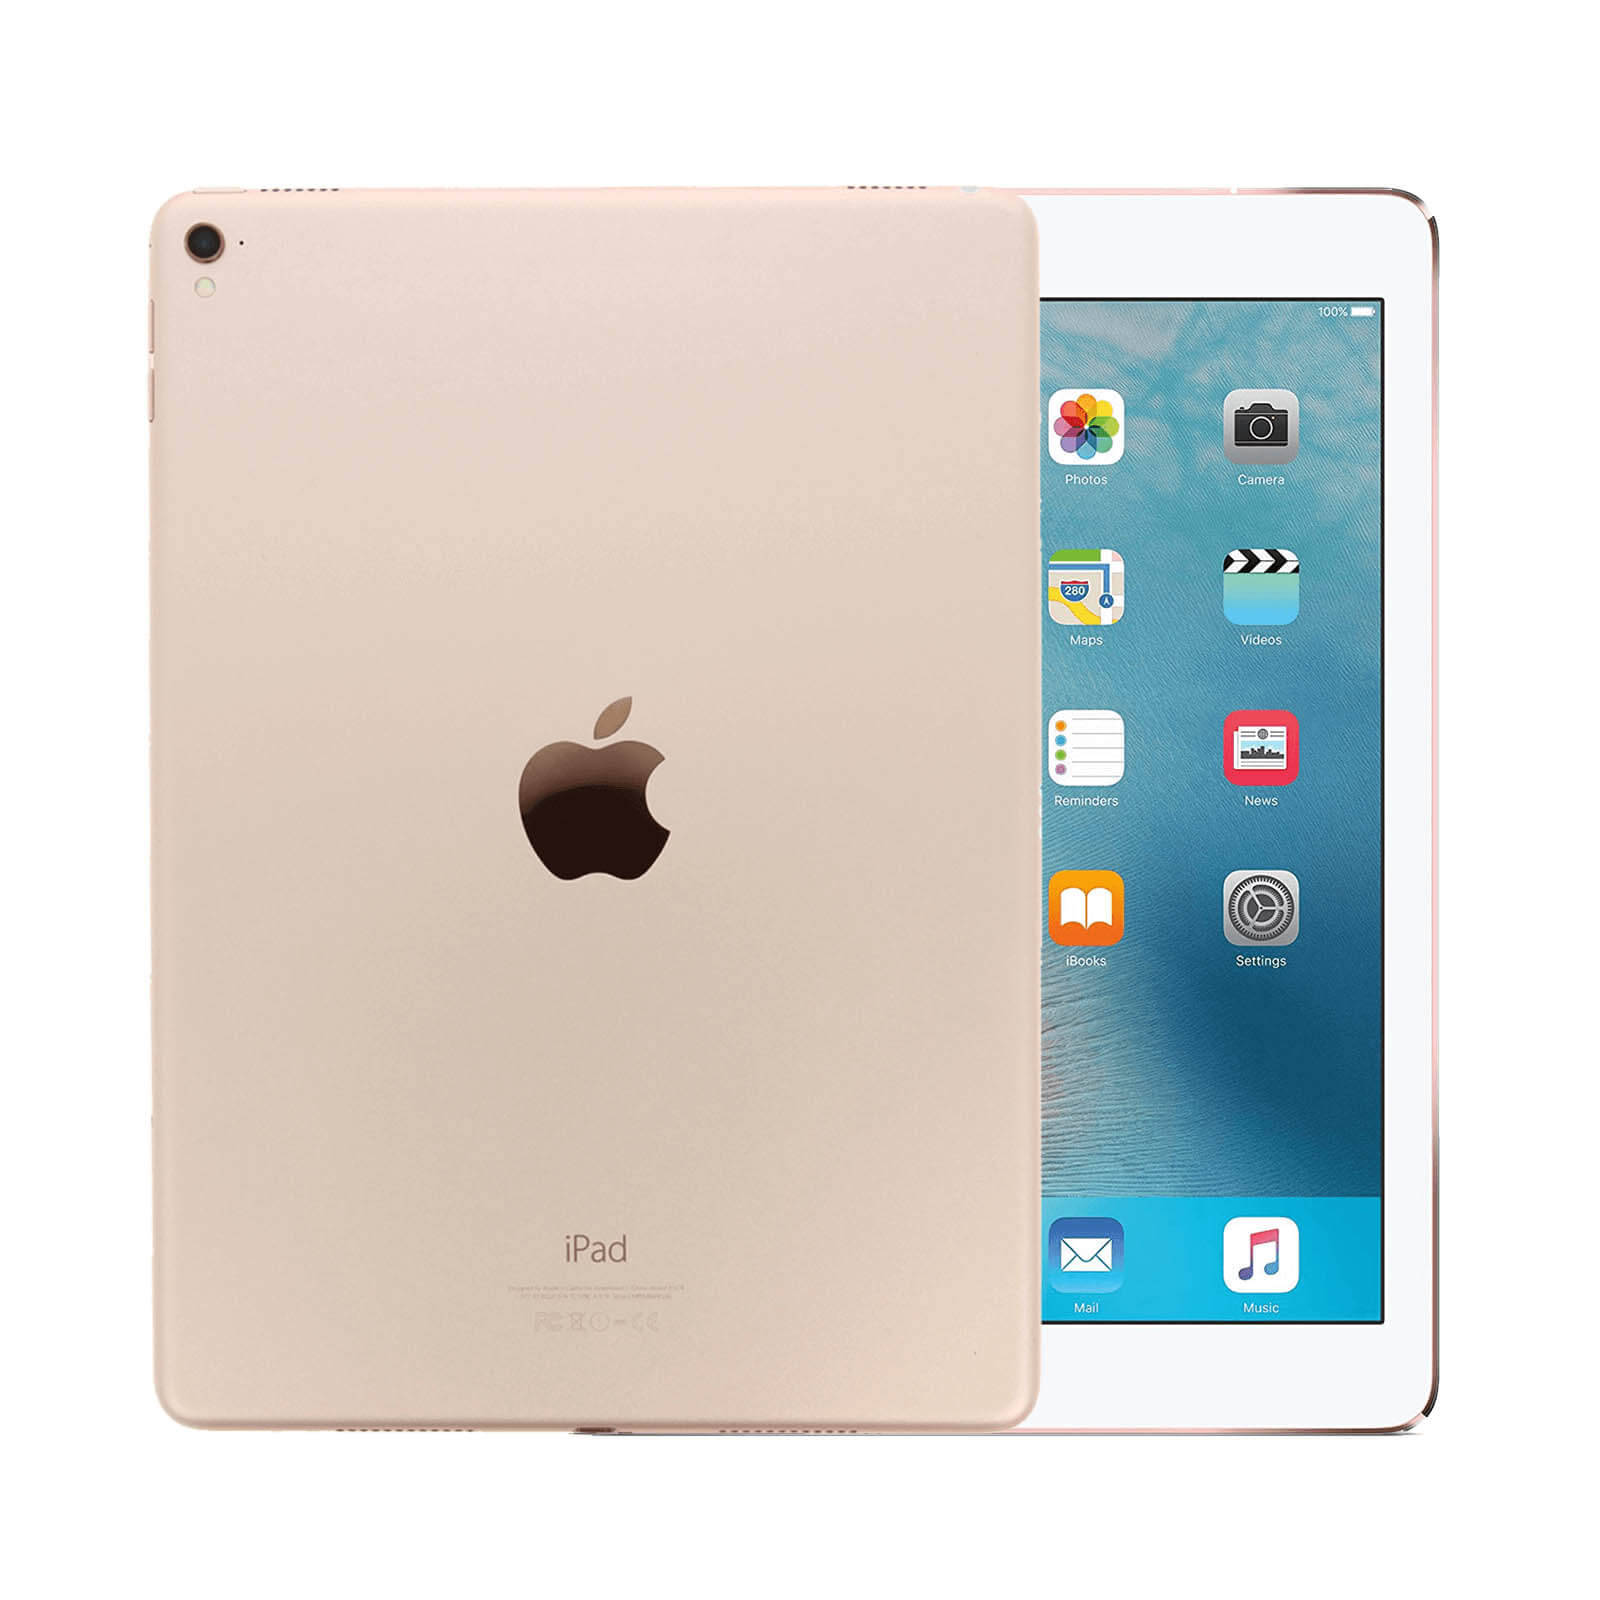 iPad Pro 9.7 Inch 32GB Gold Very Good - WiFi